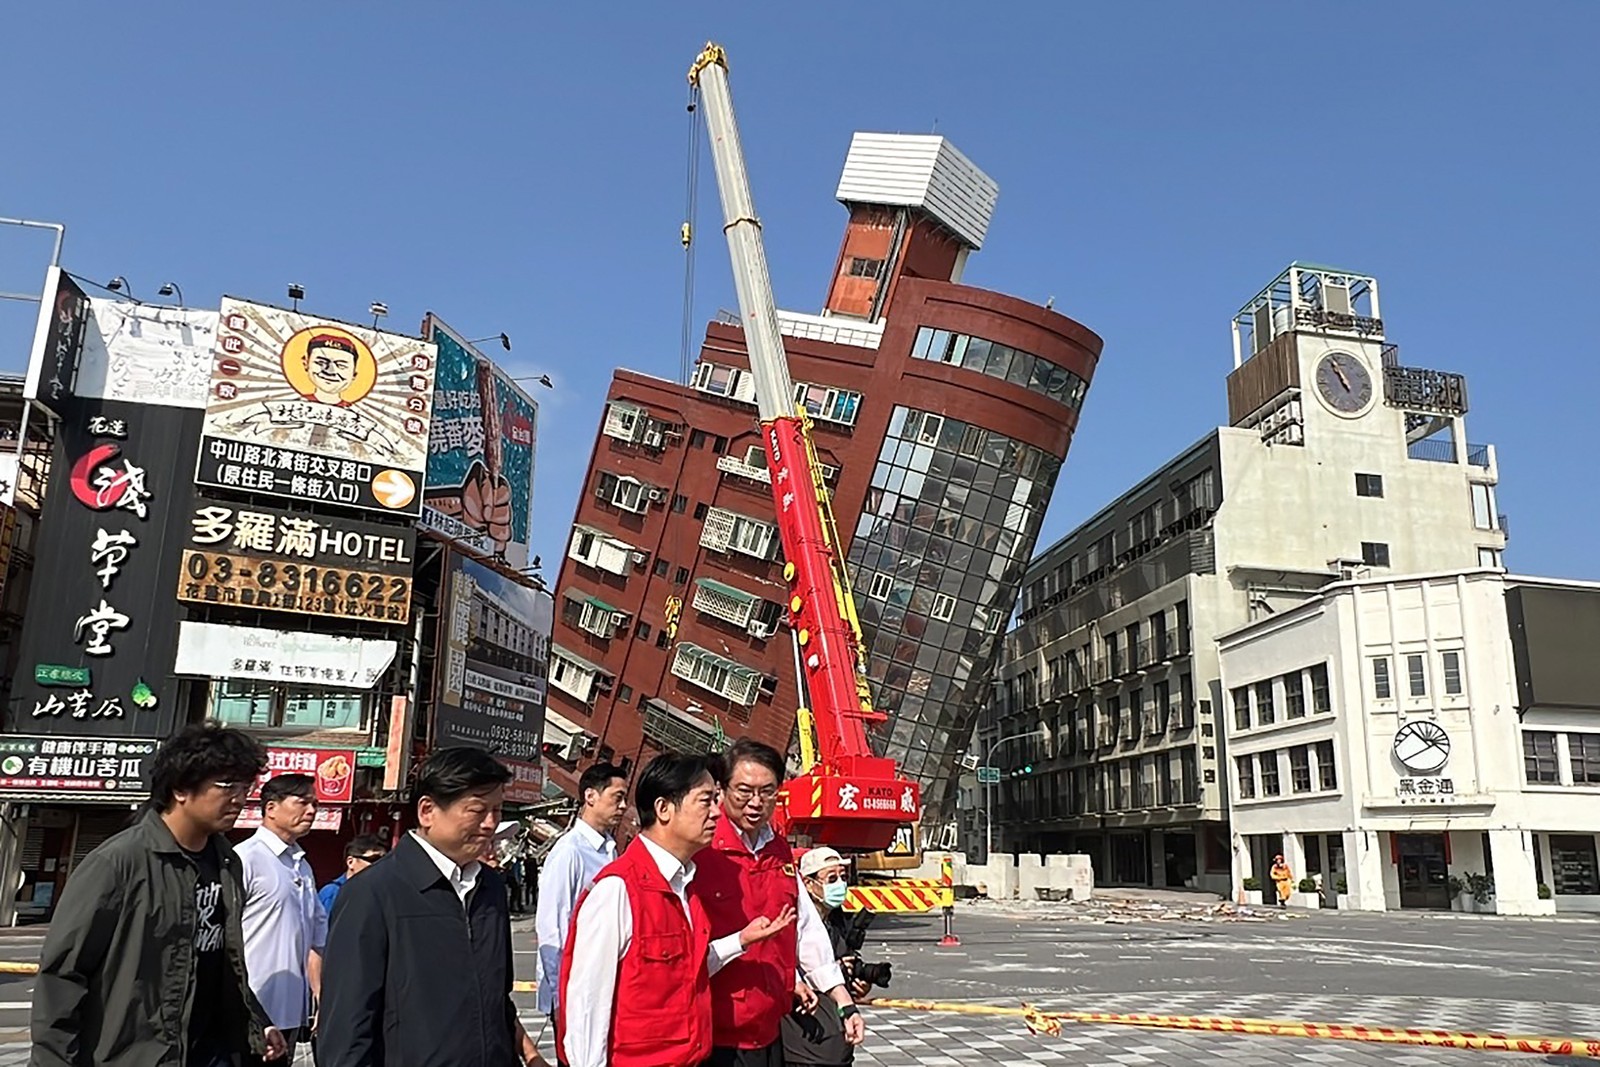 Políticos observam danos de terremoto em Hualien, Taiwan — Foto: CNA / AFP